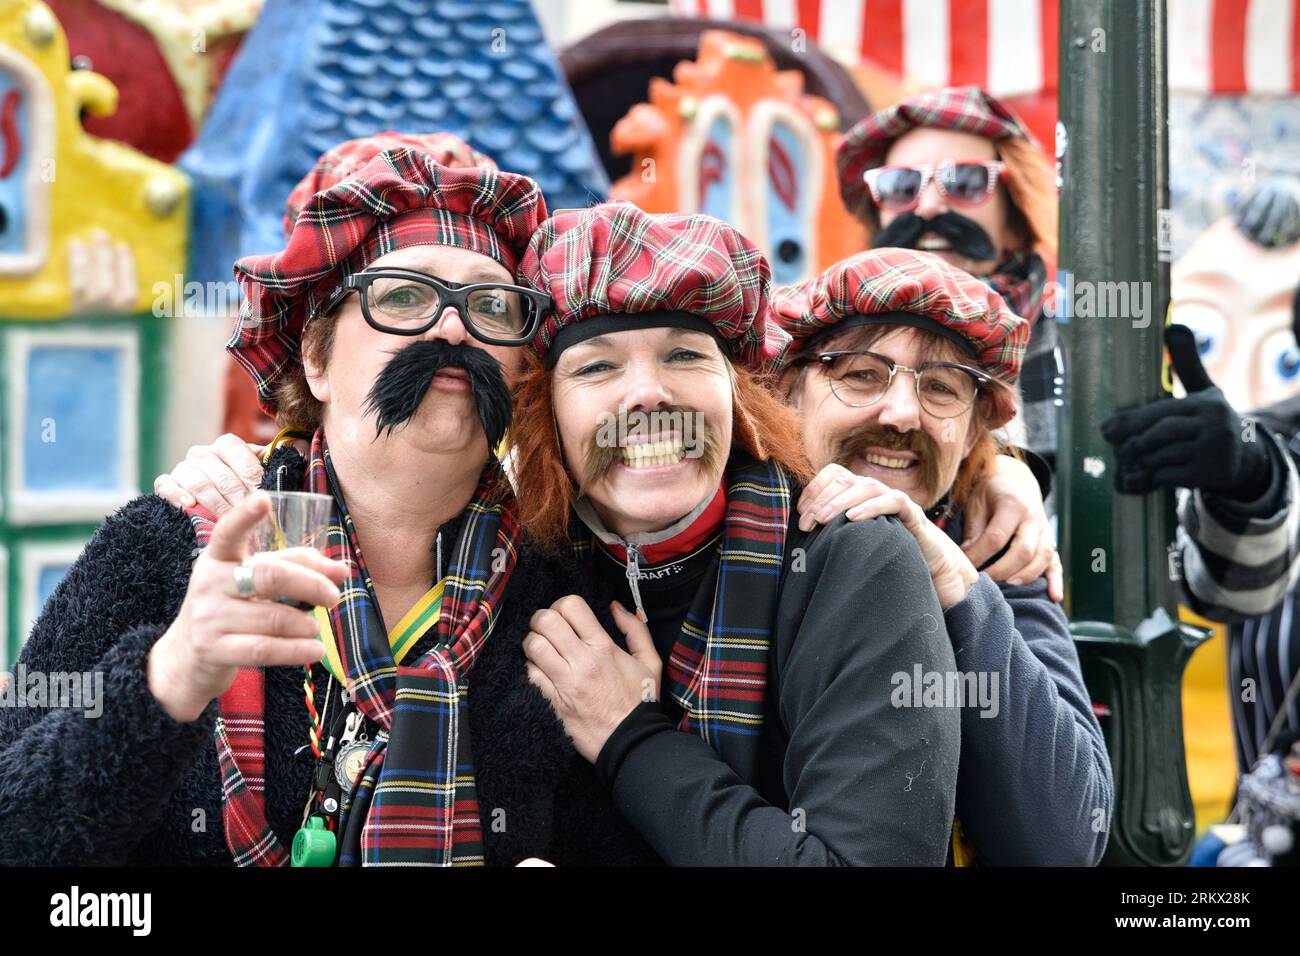 Quatre célébrants de carnaval posent joyeusement pour une photo pendant le défilé de carnaval à Breda Banque D'Images